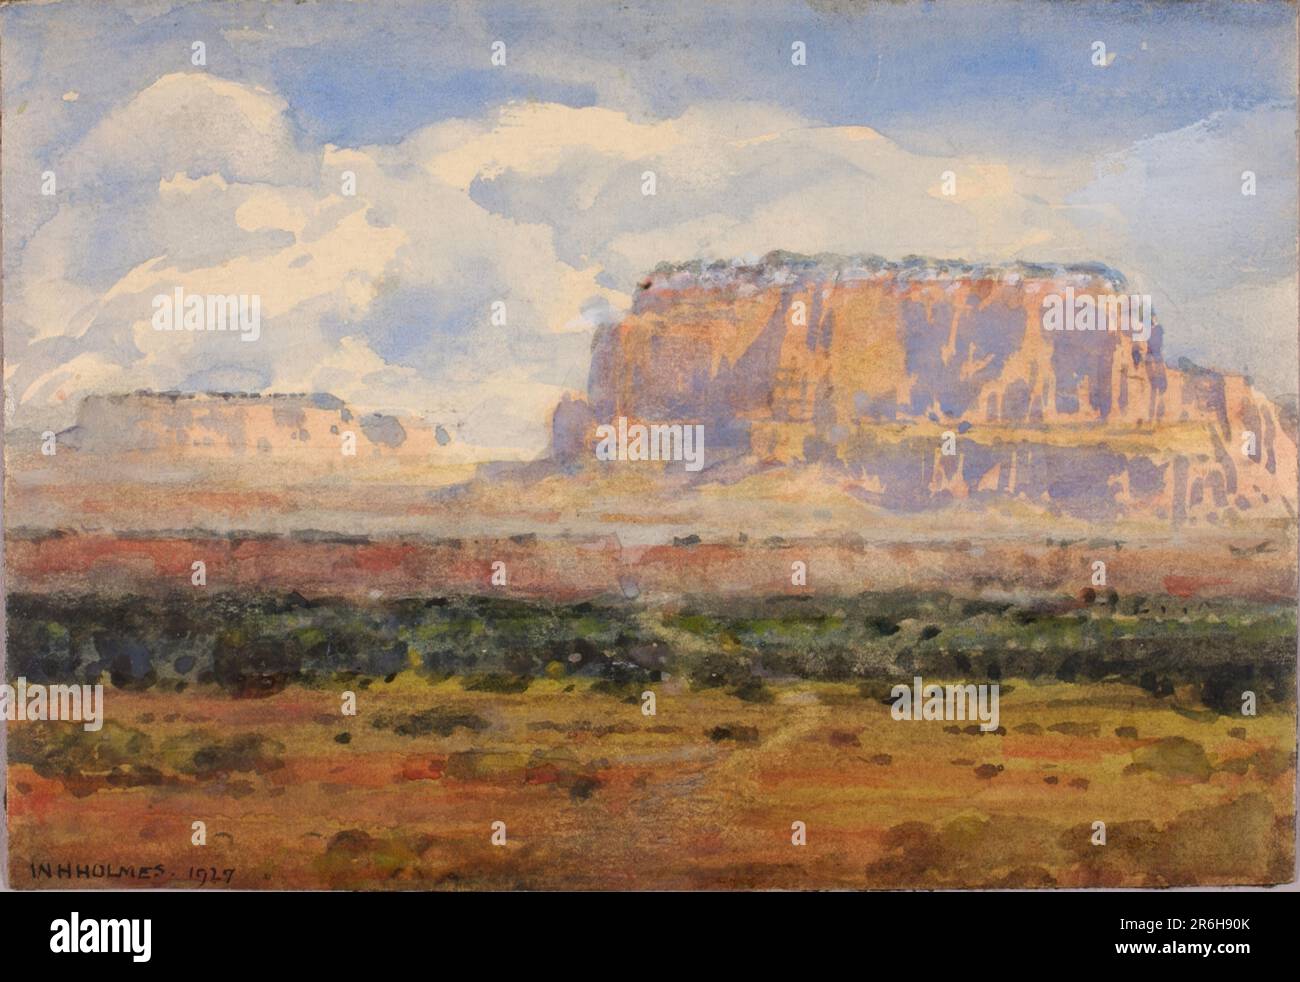 La Mesa enchantée. Date: 1927. aquarelle et aquarelle opaque sur papier. Musée: Smithsonian American Art Museum. Banque D'Images